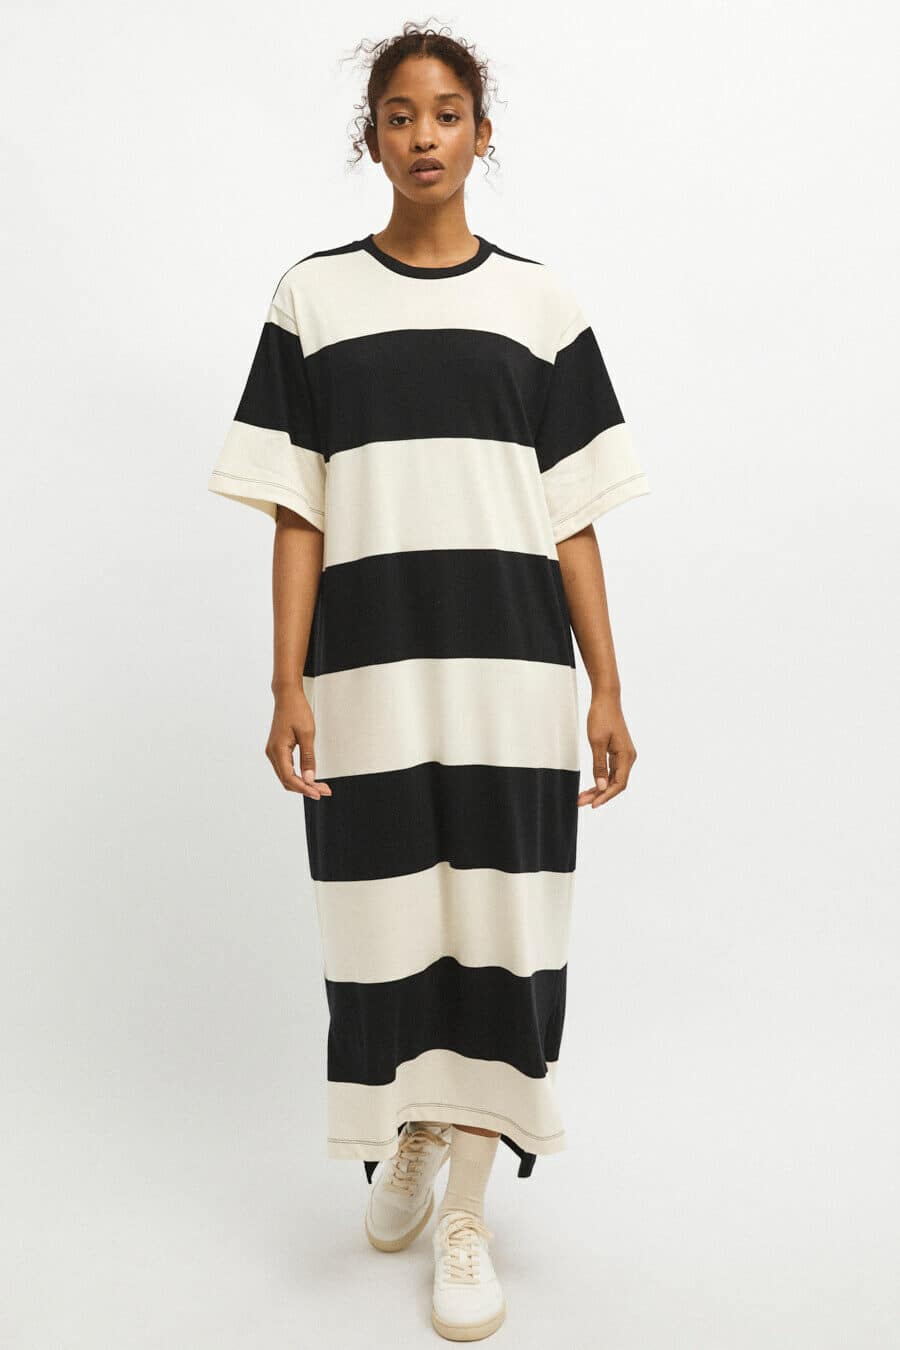 RITA ROW - Olimpia Dress - Black White Stripes